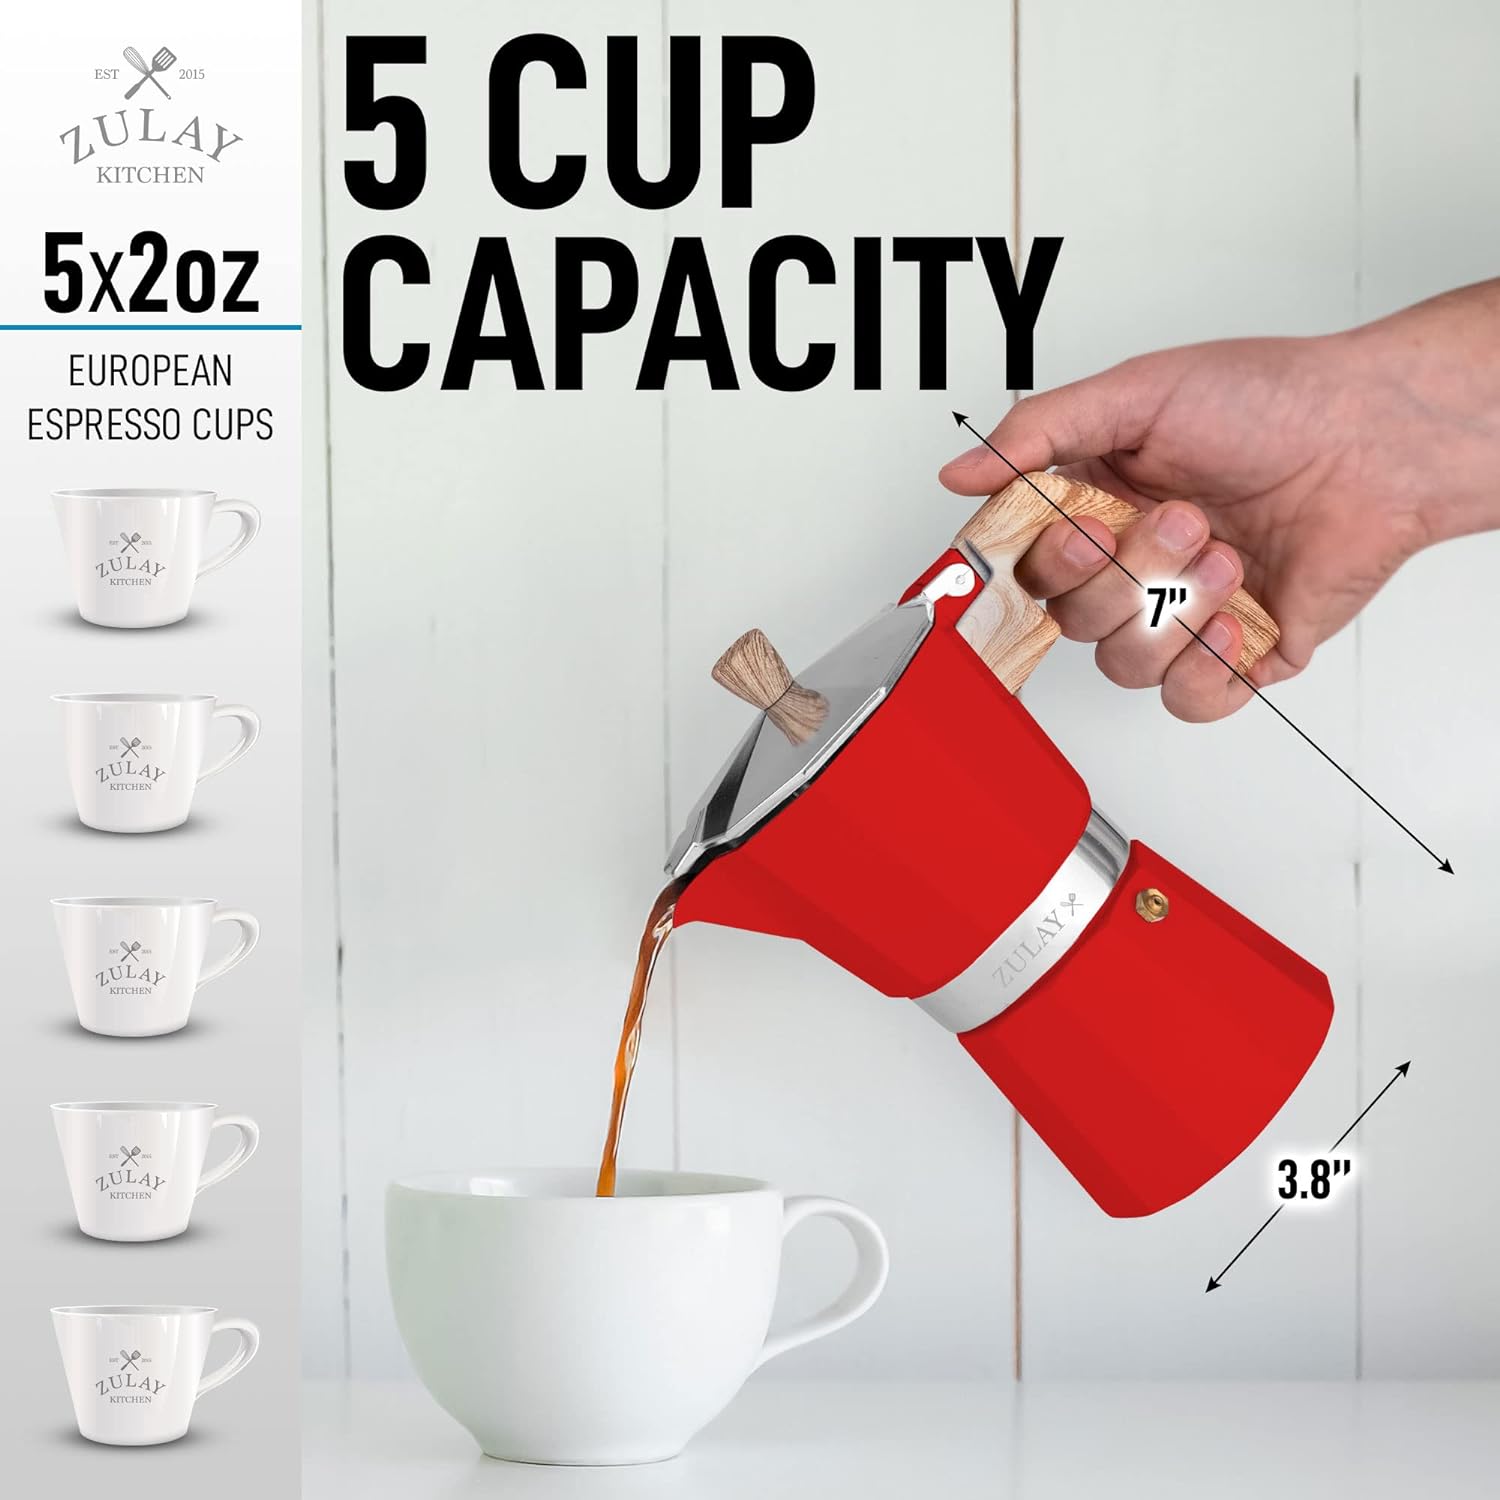 Stovetop Espresso Cup Moka Pot - 5.5 Cup